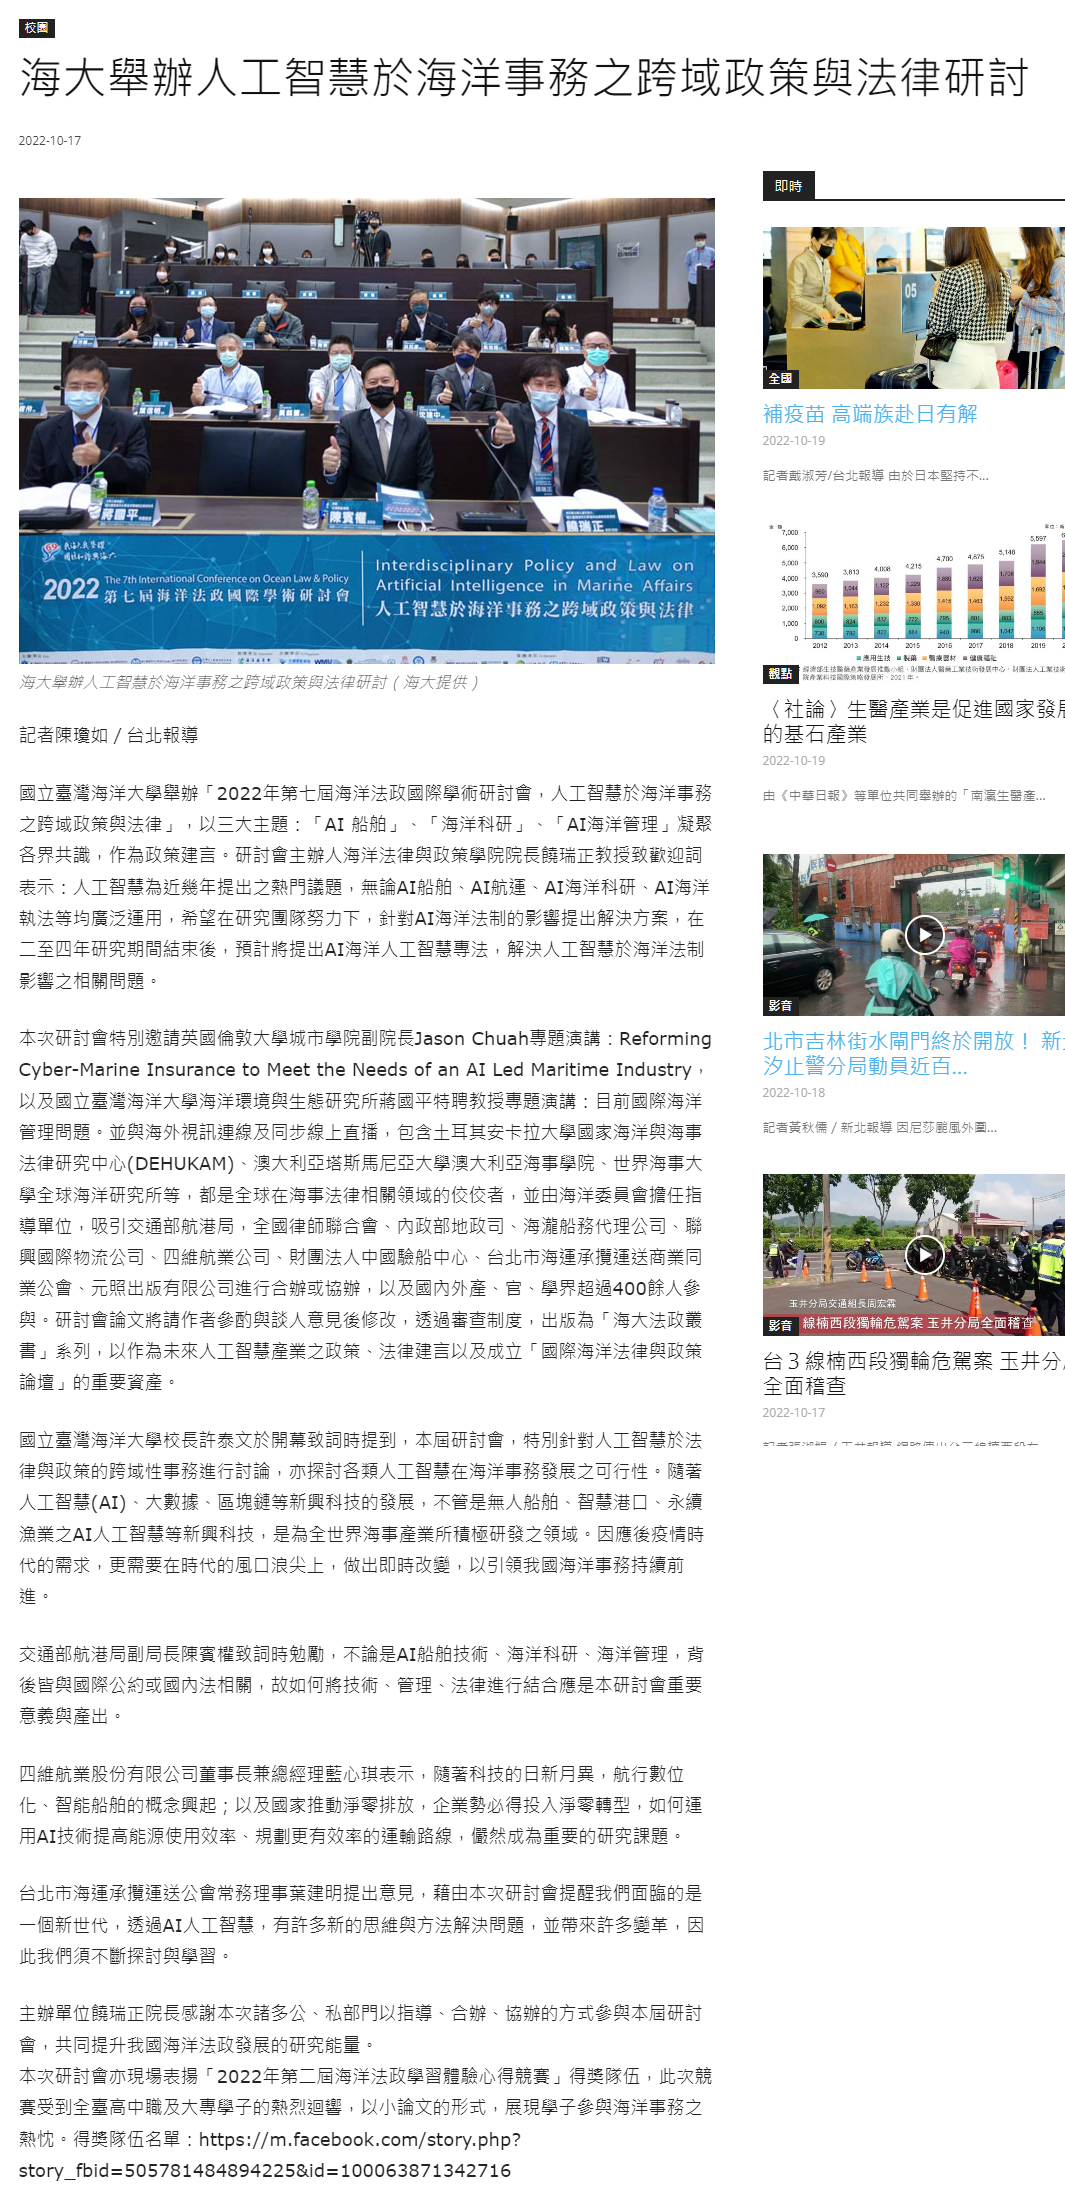 海大舉辦人工智慧於海洋事務之跨域政策與法律研討 - 中華日報-中華新聞雲